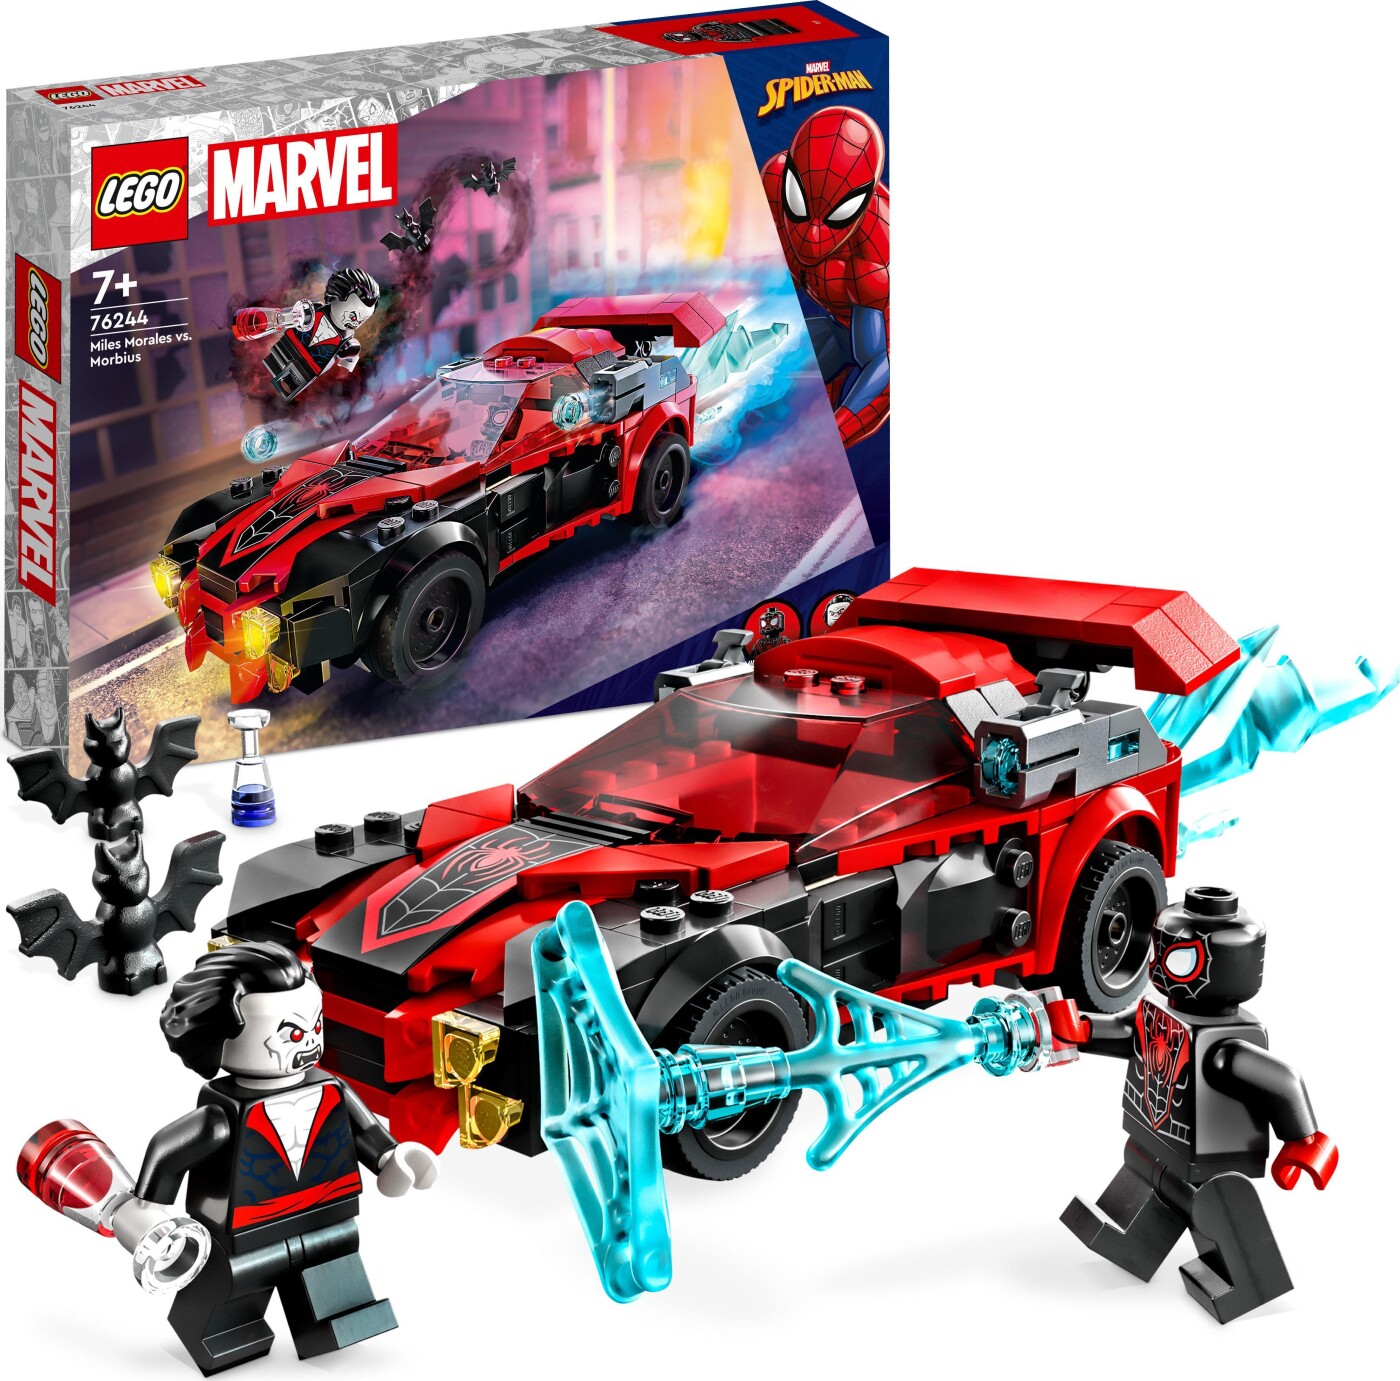 Billede af Lego Marvel Spider-man - Miles Morales Mod Morbius - 76244 hos Gucca.dk